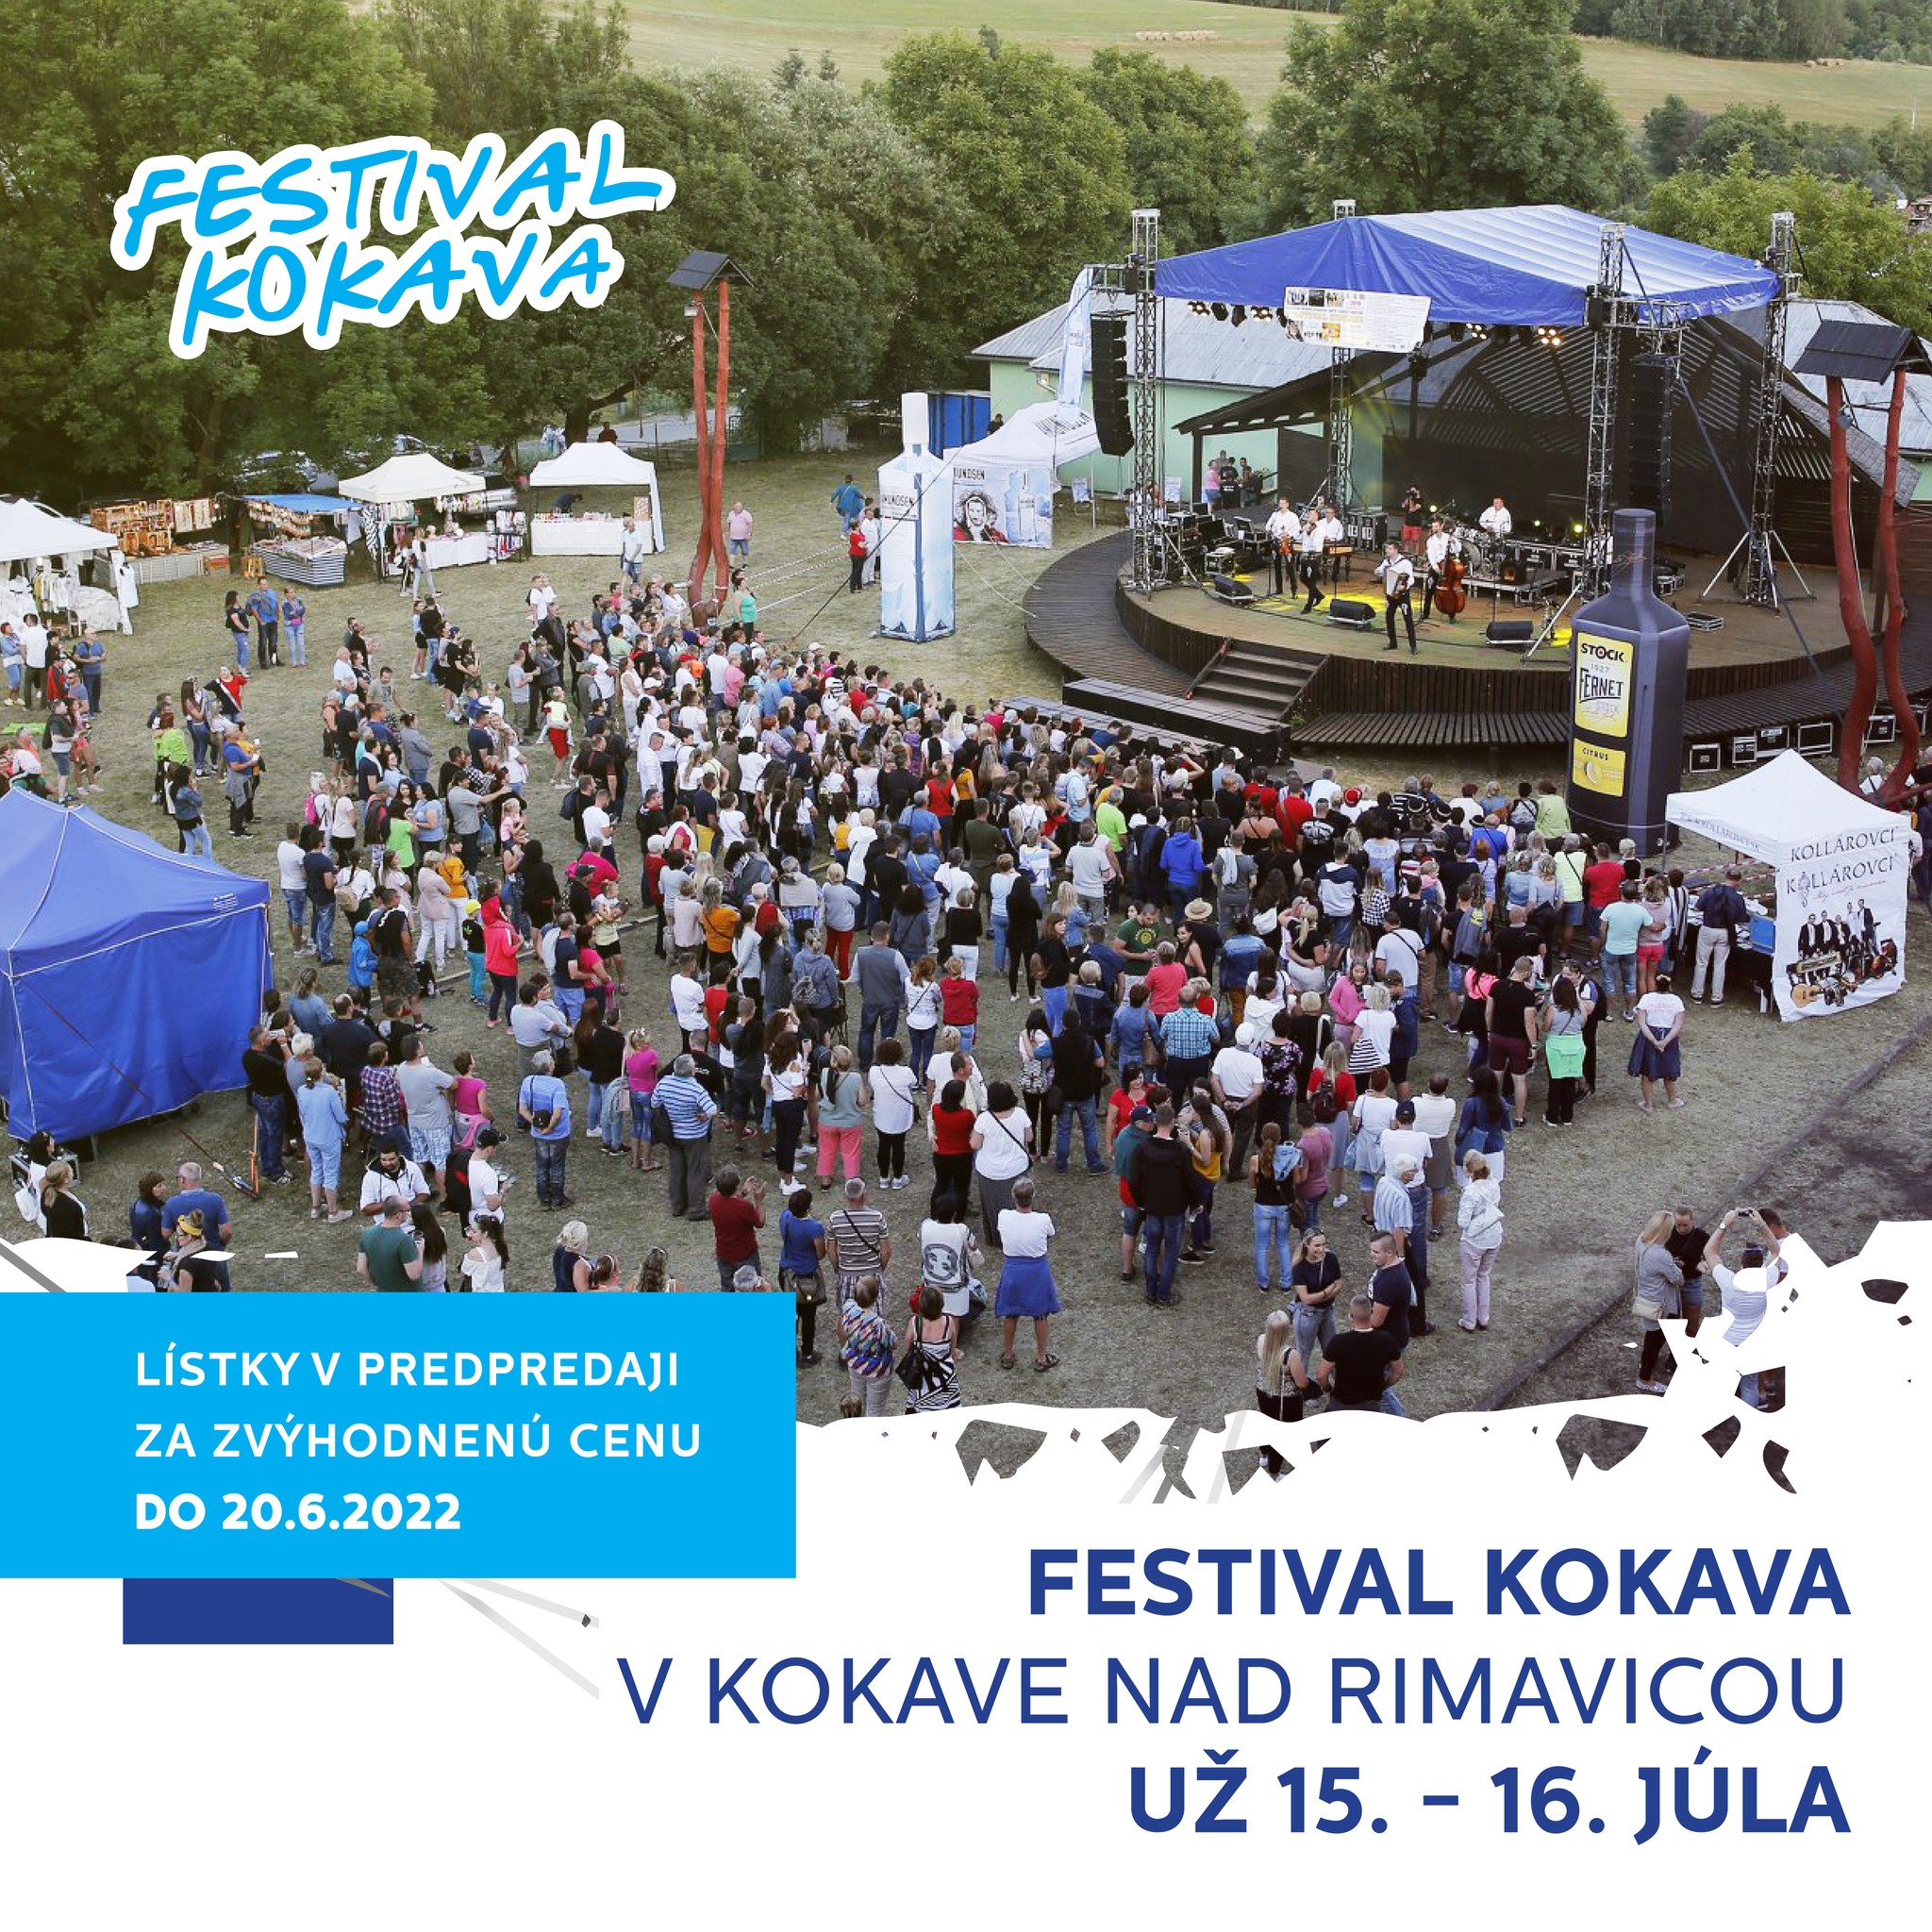 Kokava festival 2022